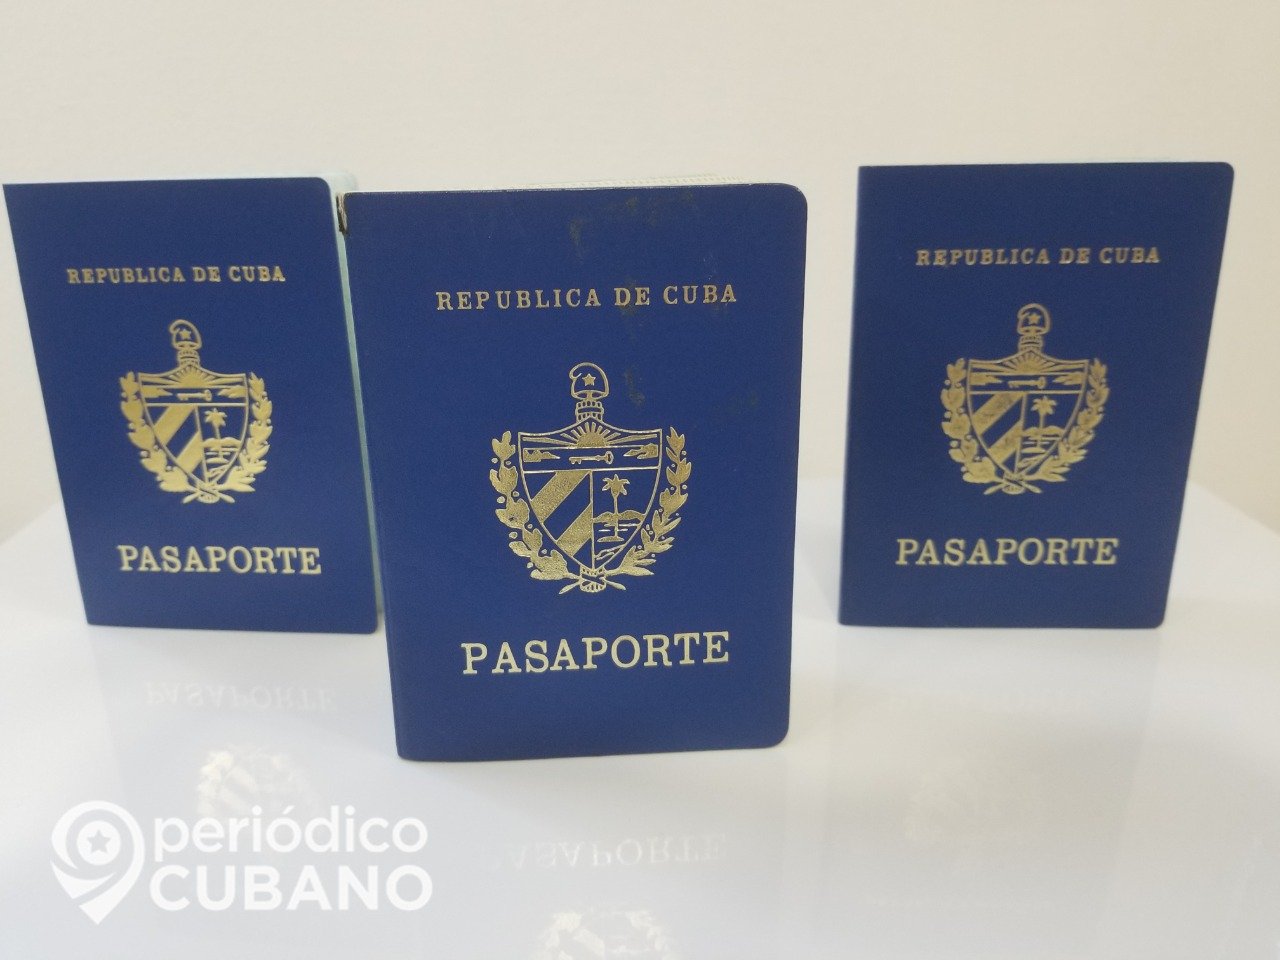 Panamá “trabaja en darle prioridad y agilidad a solicitudes de Visas” de los cubanos